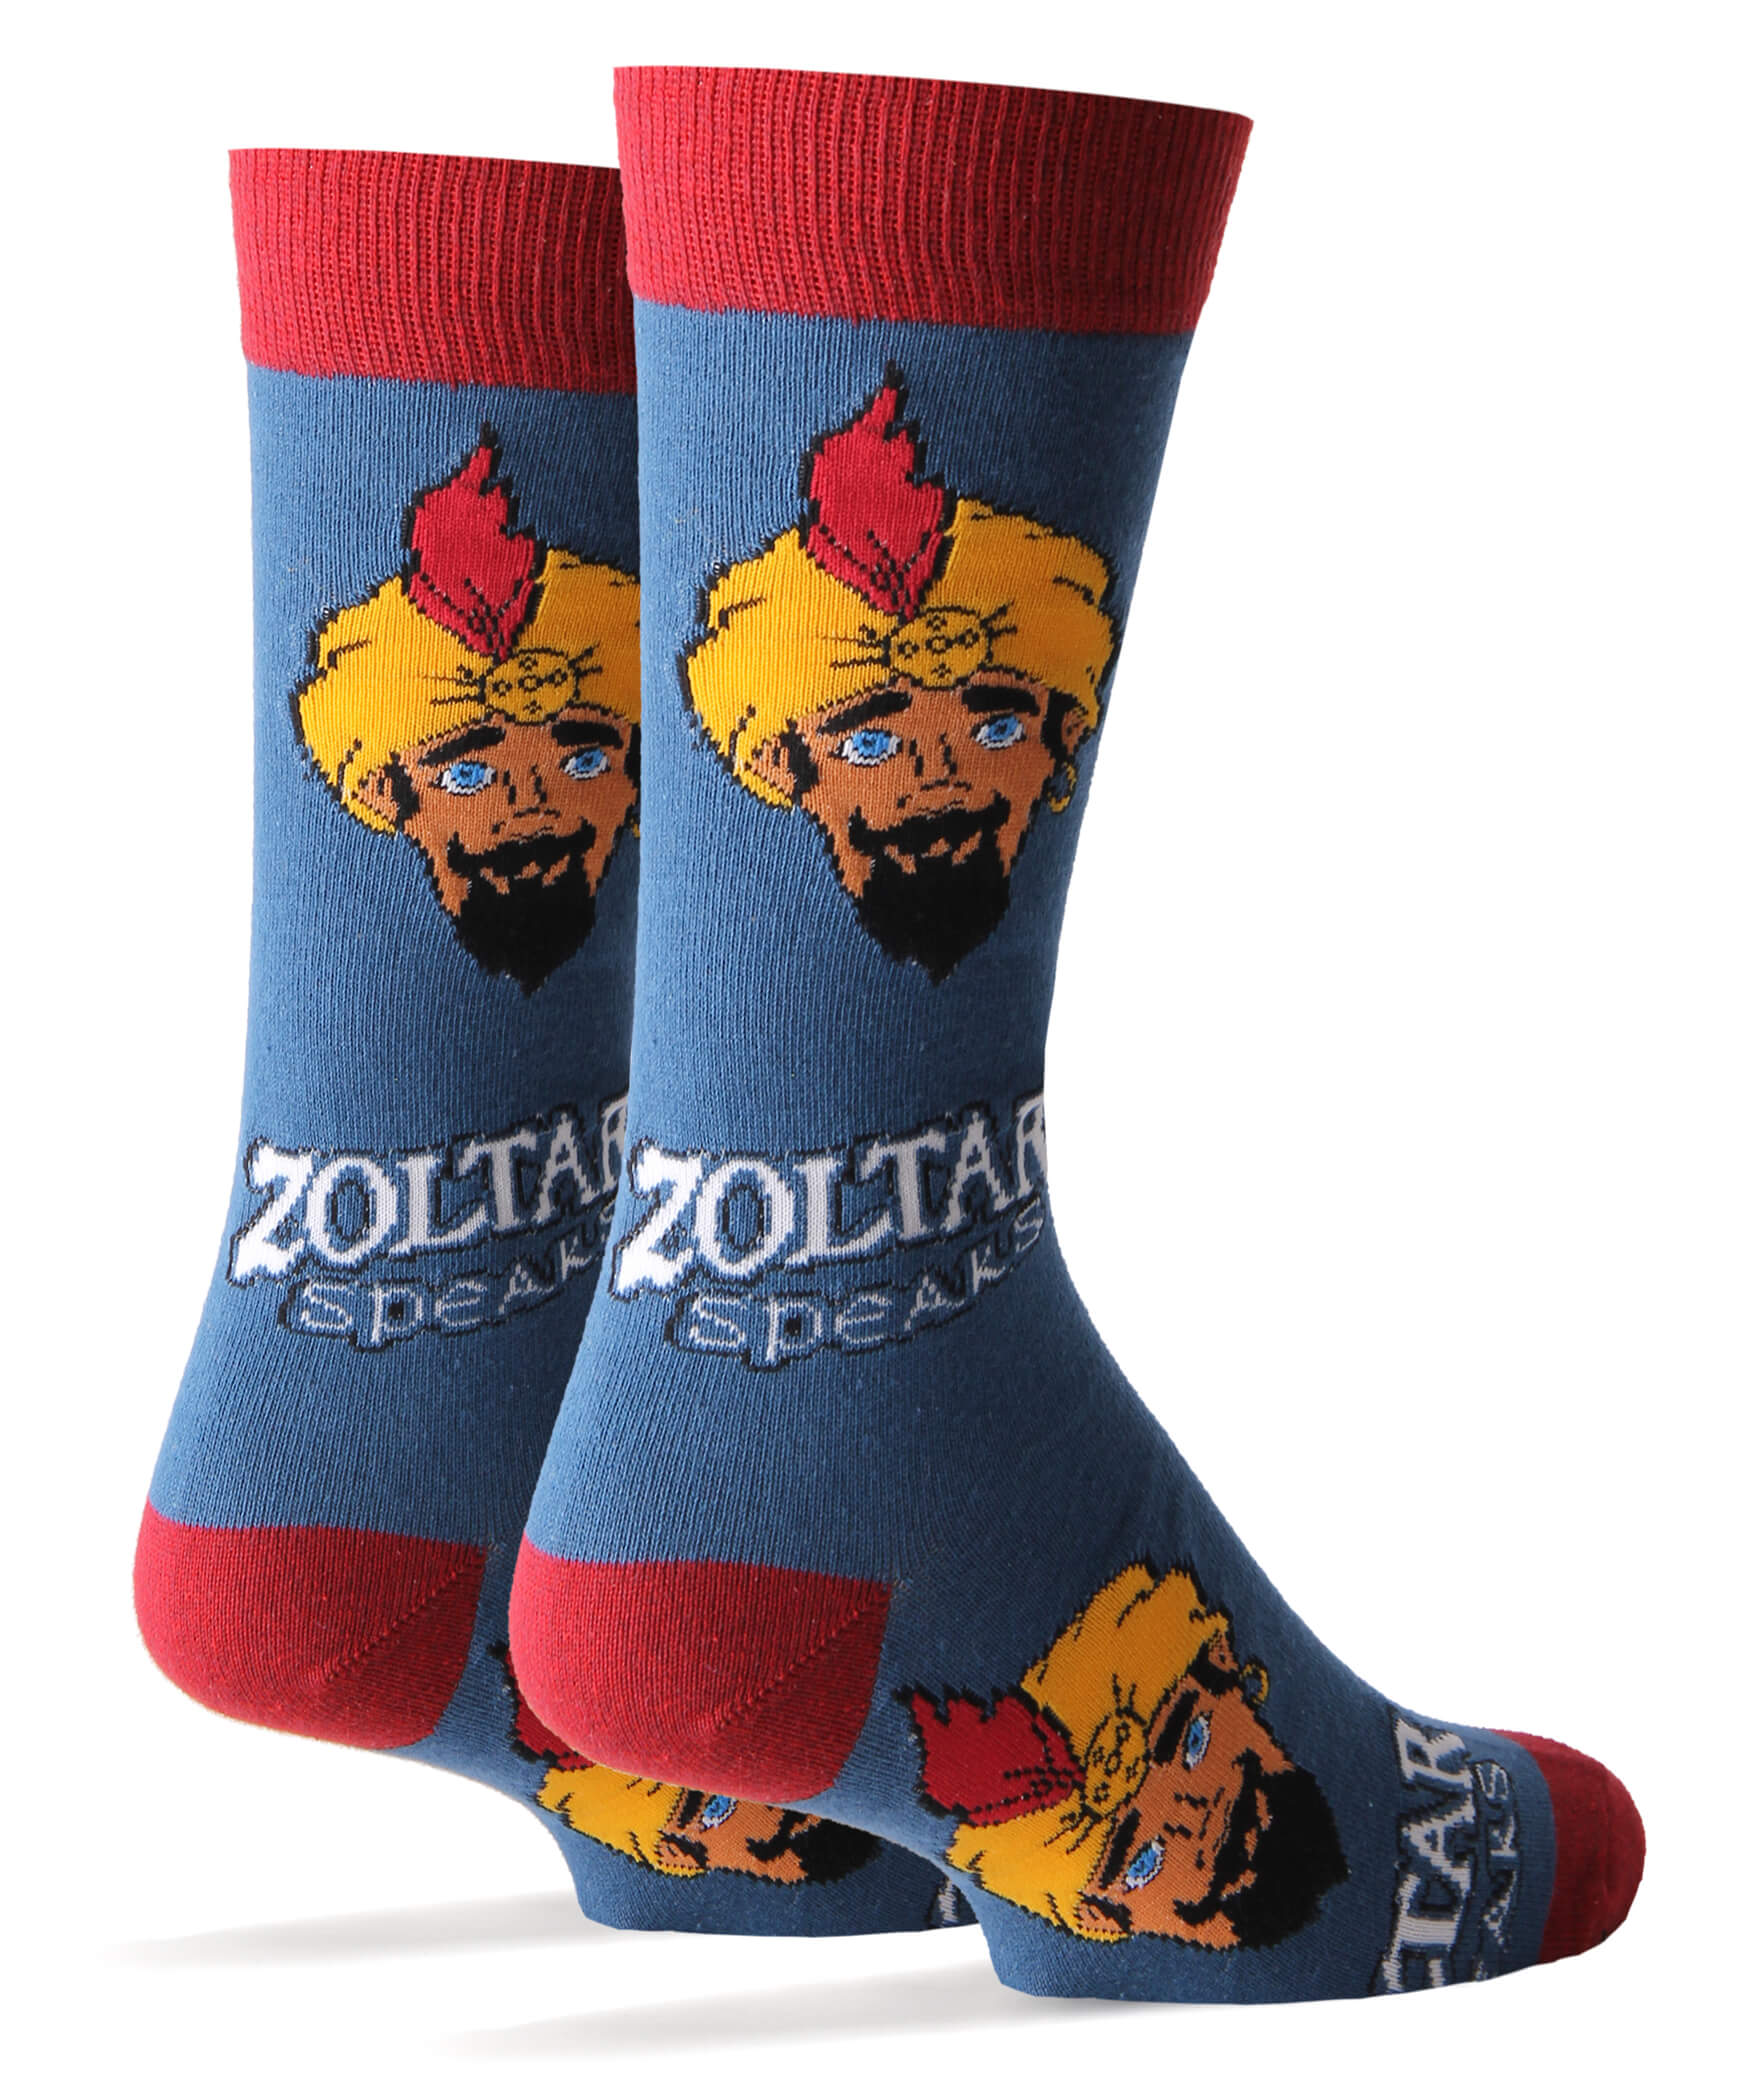 Zoltar Speaks Again Socks